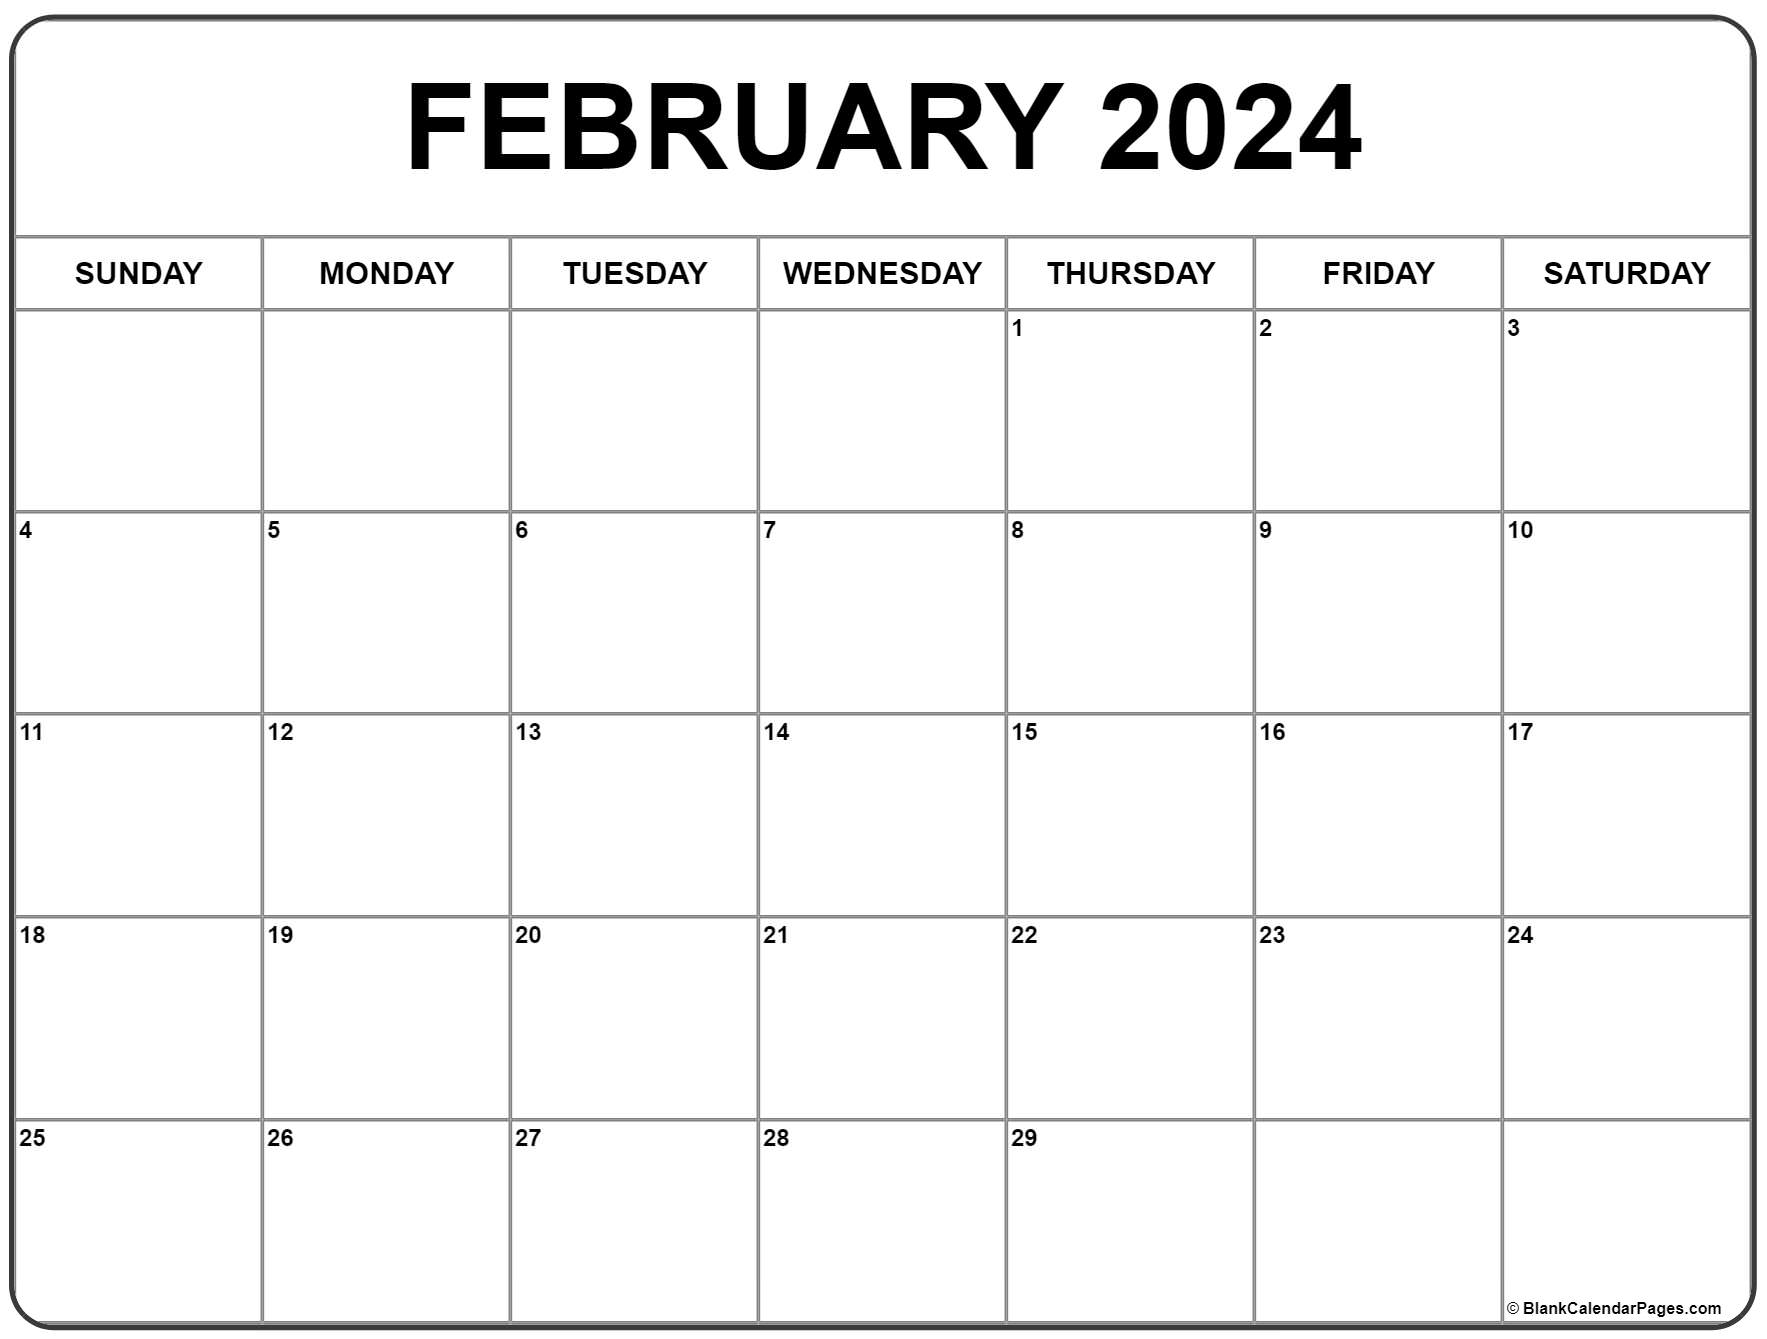 February 2024 Calendar | Free Printable Calendar for Calendar February 2024 Printable Free